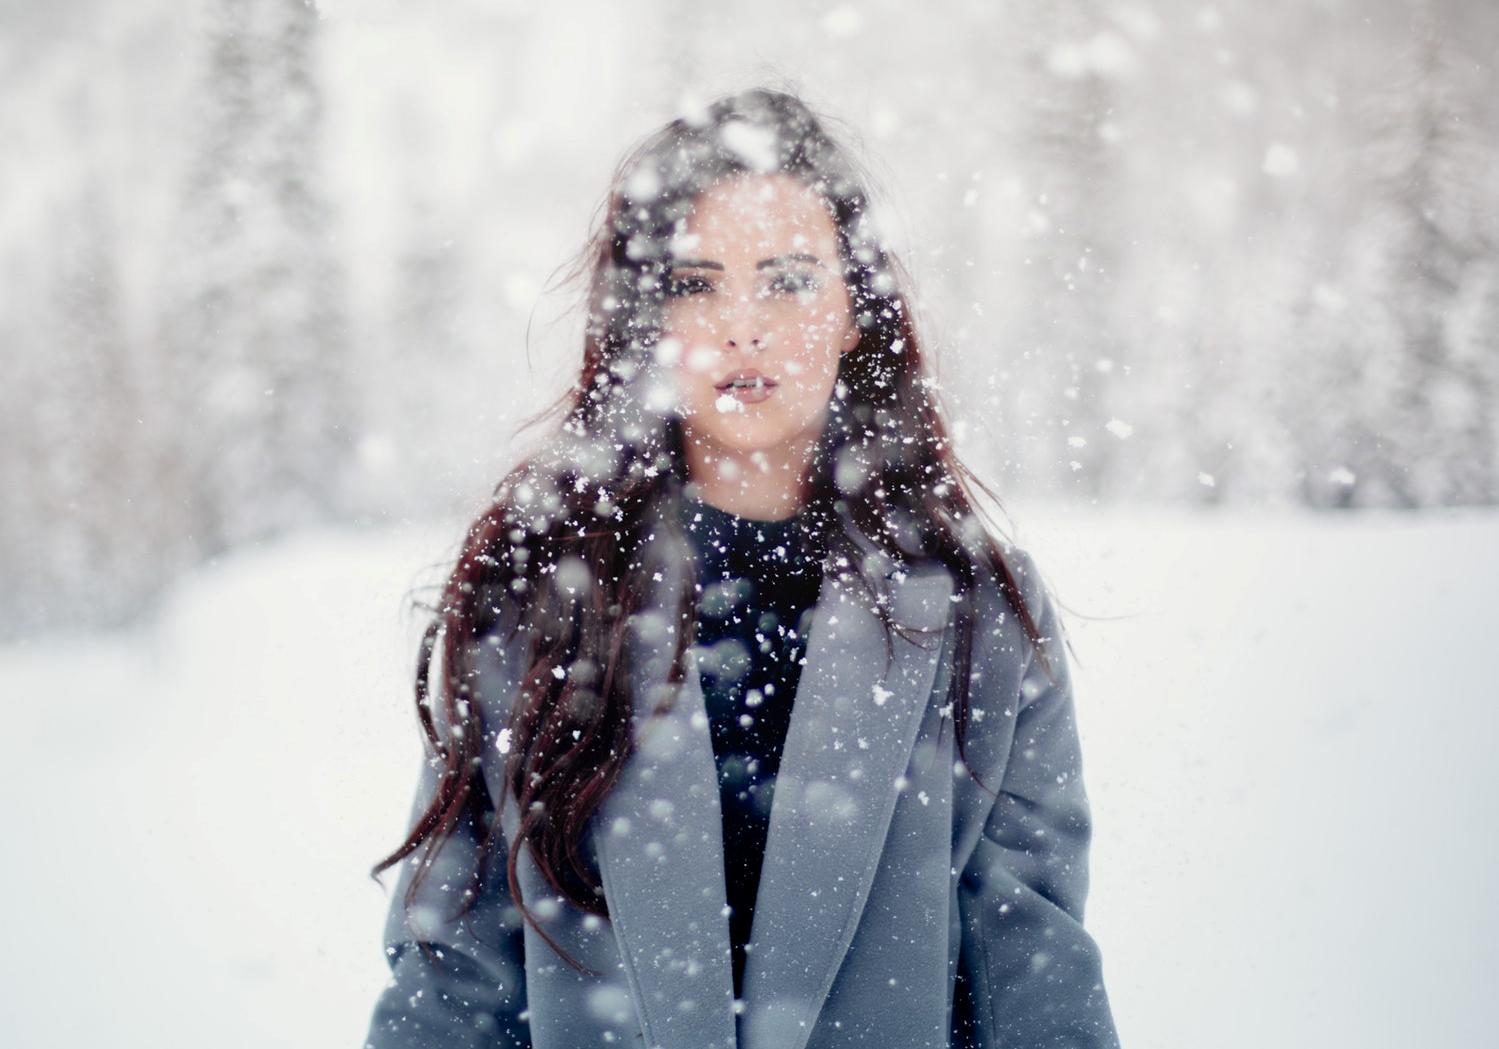 Снег падал хлопьями приятно касался лица. Зимний портрет. Девушка зима снег. Девушка в снегу. Фотосессия на снегу.